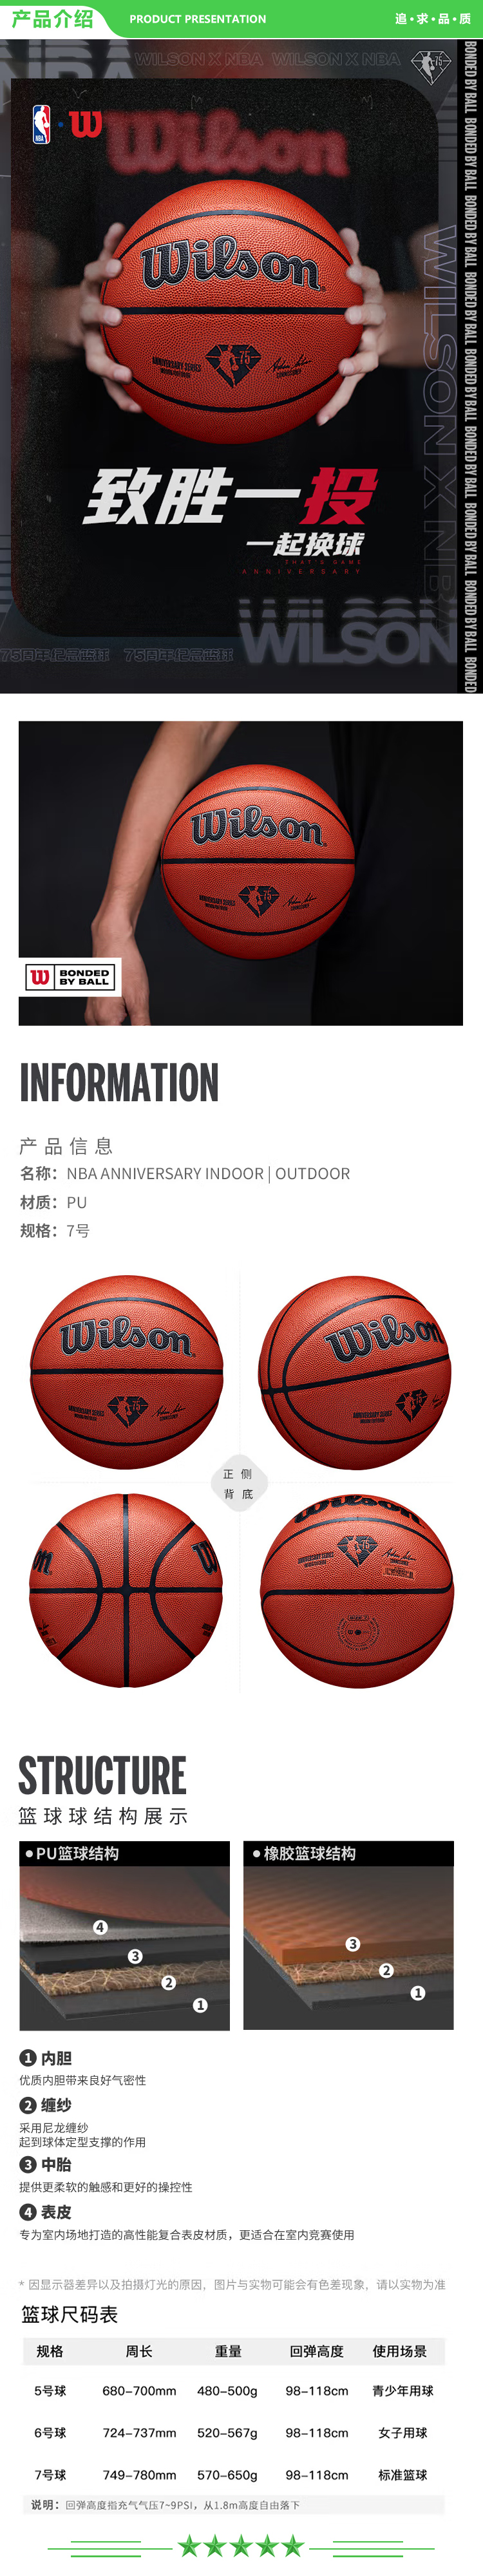 威尔胜 Wilson WZ2006901CN7 原色 7号球 75周年NBA限量款篮球PU .jpg